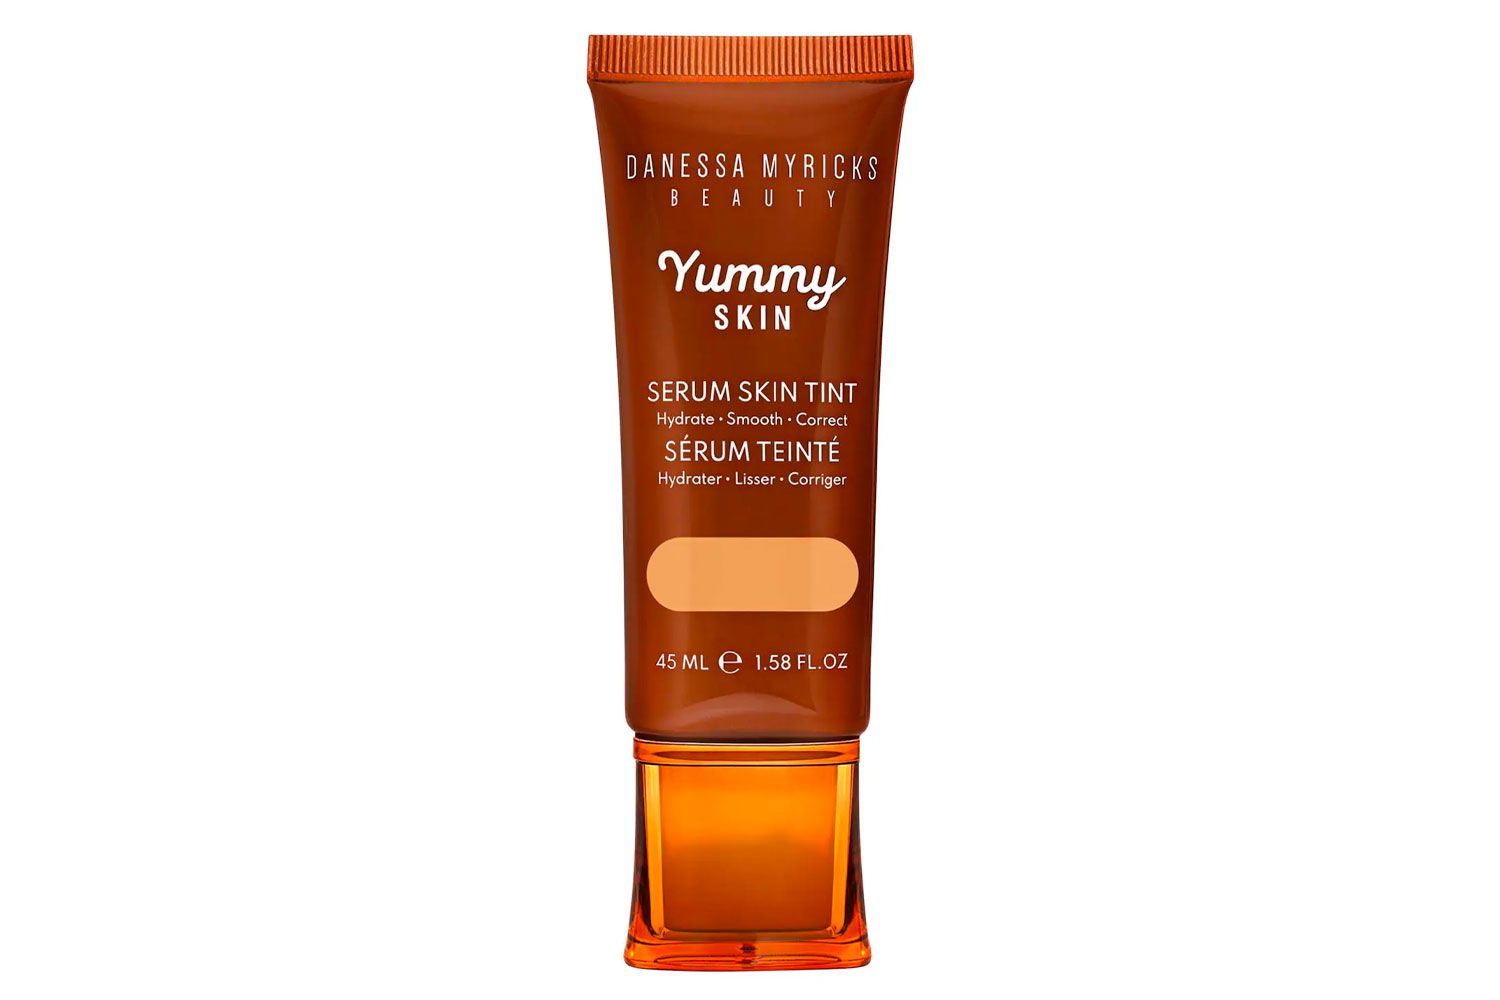 Sephora Danessa Myricks Beauty Yummy Skin Soothing Serum Skin Tint Foundation